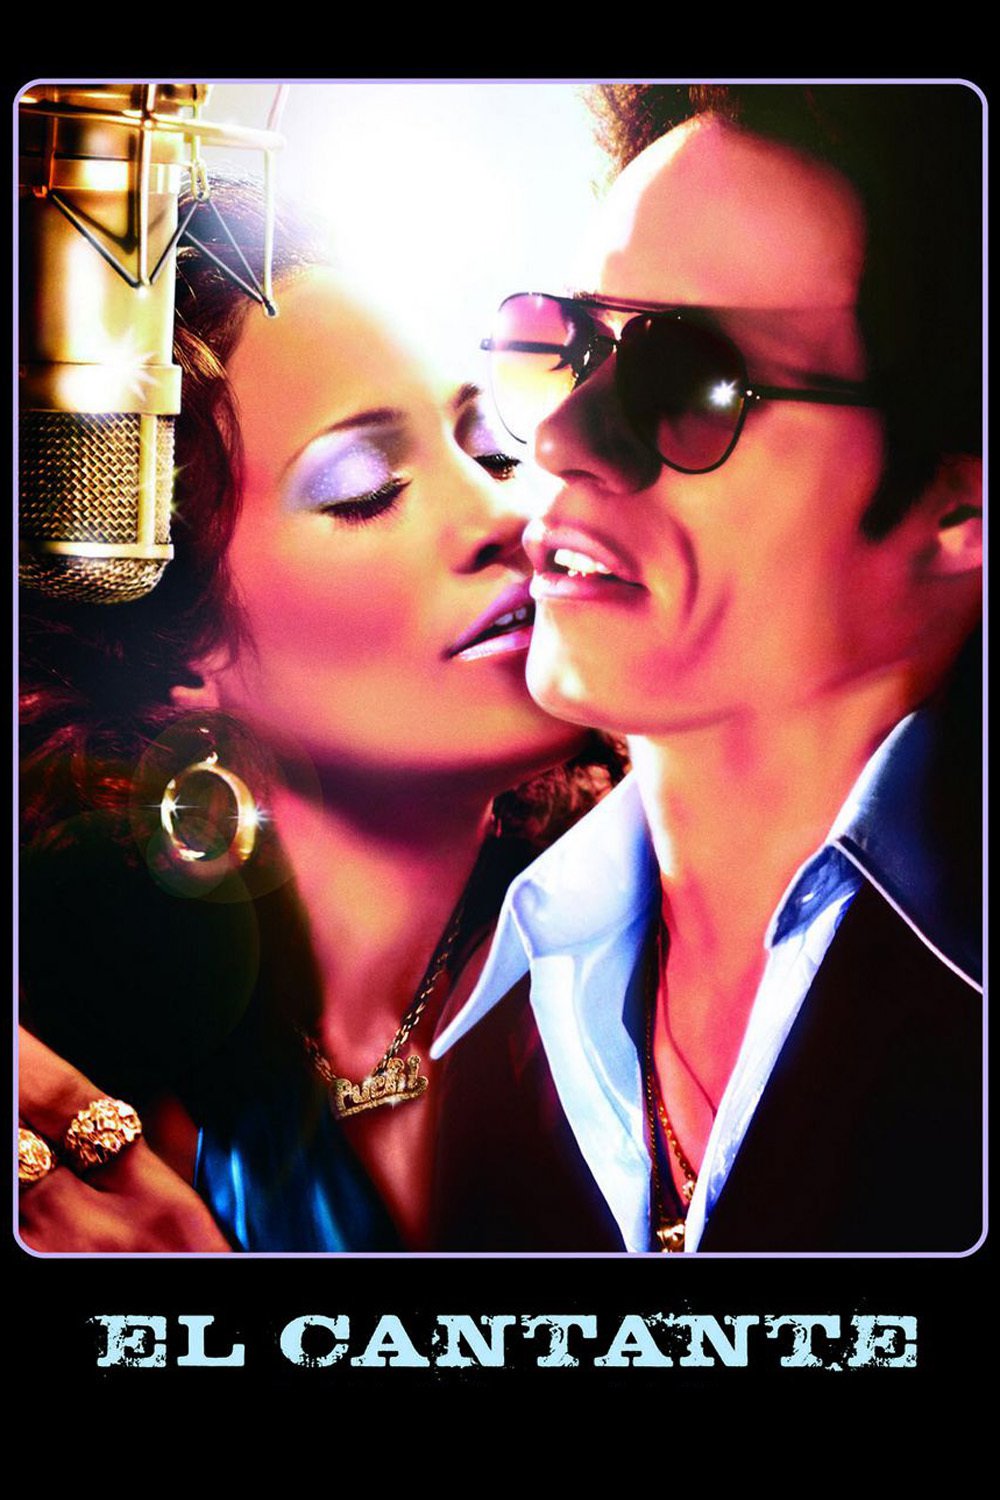 Plakat von "El cantante"